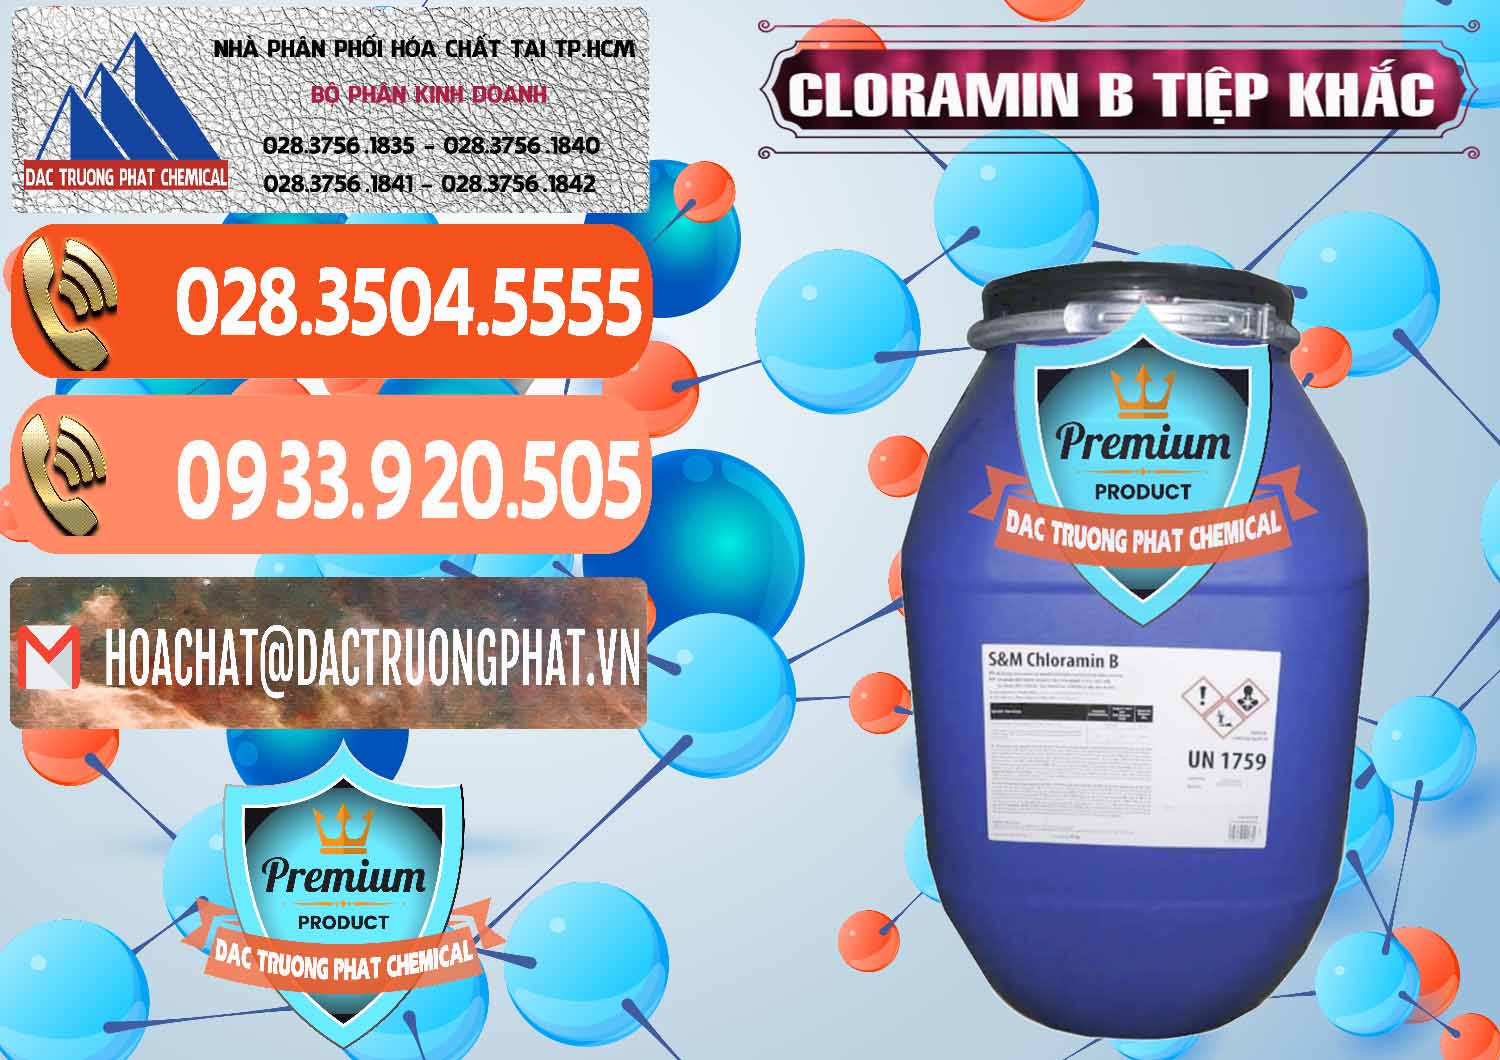 Đơn vị chuyên bán _ cung ứng Cloramin B Cộng Hòa Séc Tiệp Khắc Czech Republic - 0299 - Cty chuyên cung cấp và bán hóa chất tại TP.HCM - hoachatmientay.com